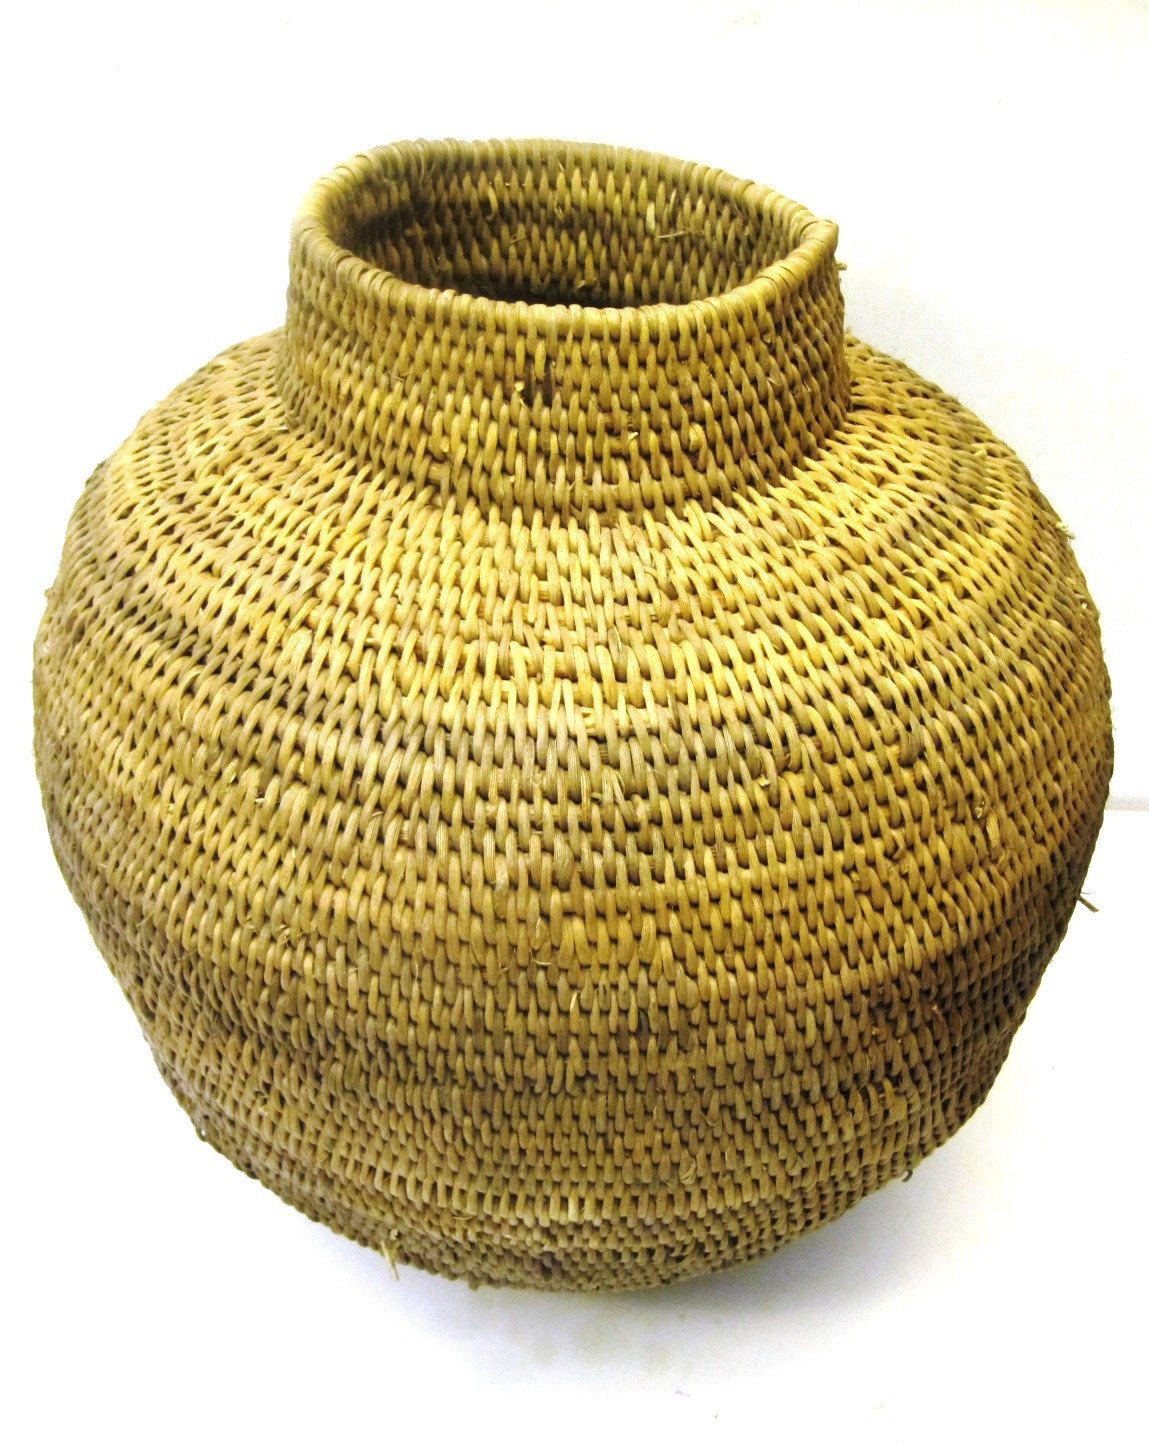 Buhera Baskets From Zimbabwe